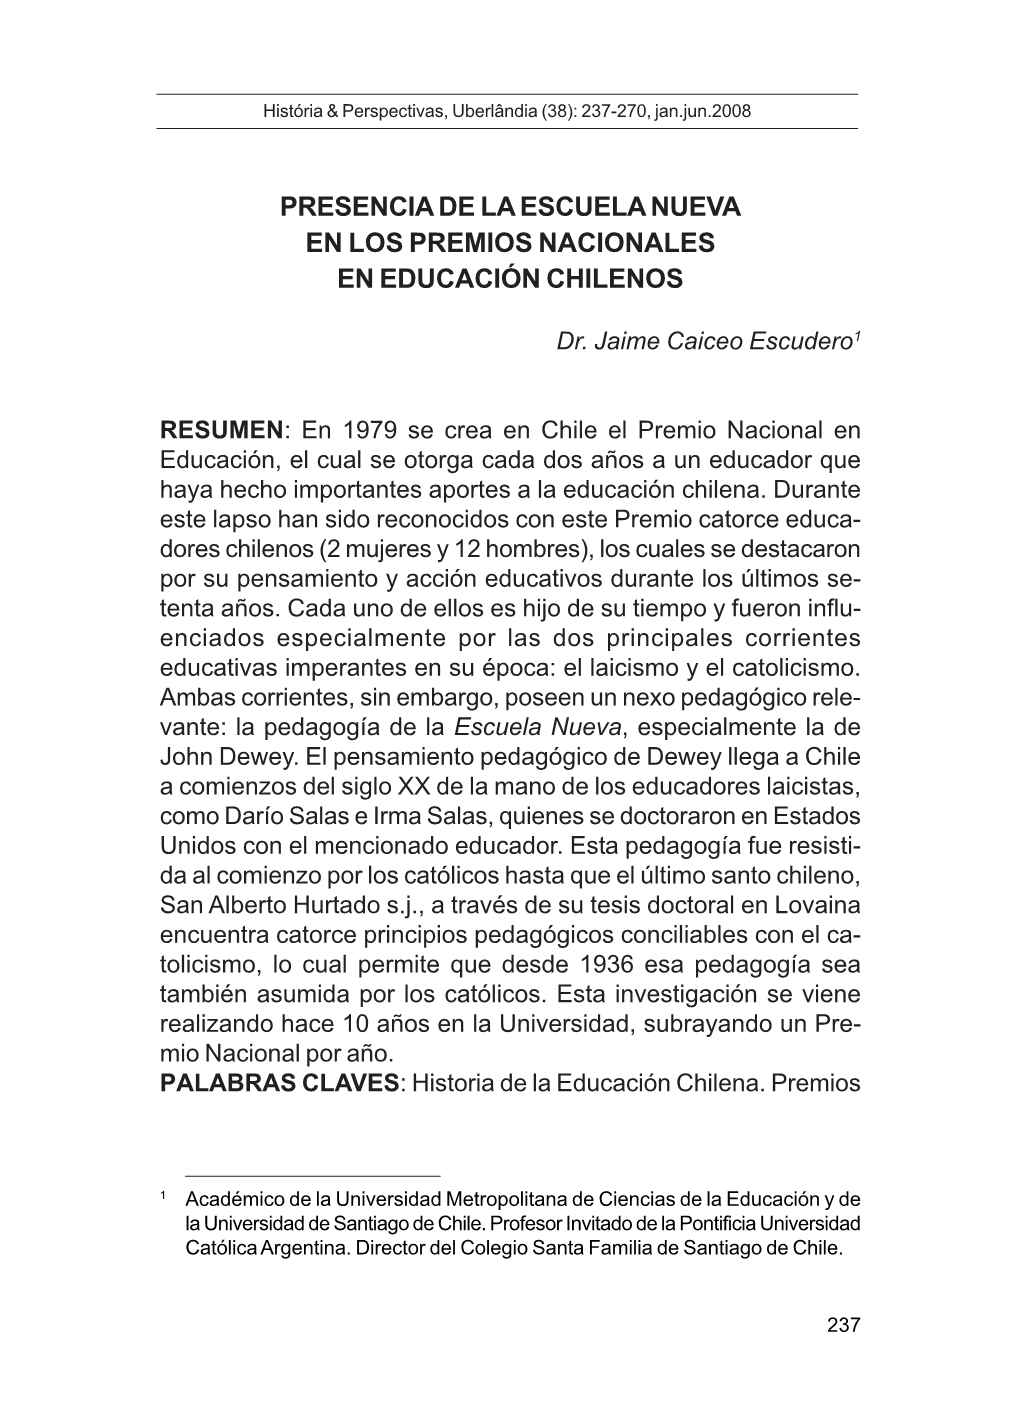 Presencia De La Escuela Nueva En Los Premios Nacionales En Educación Chilenos